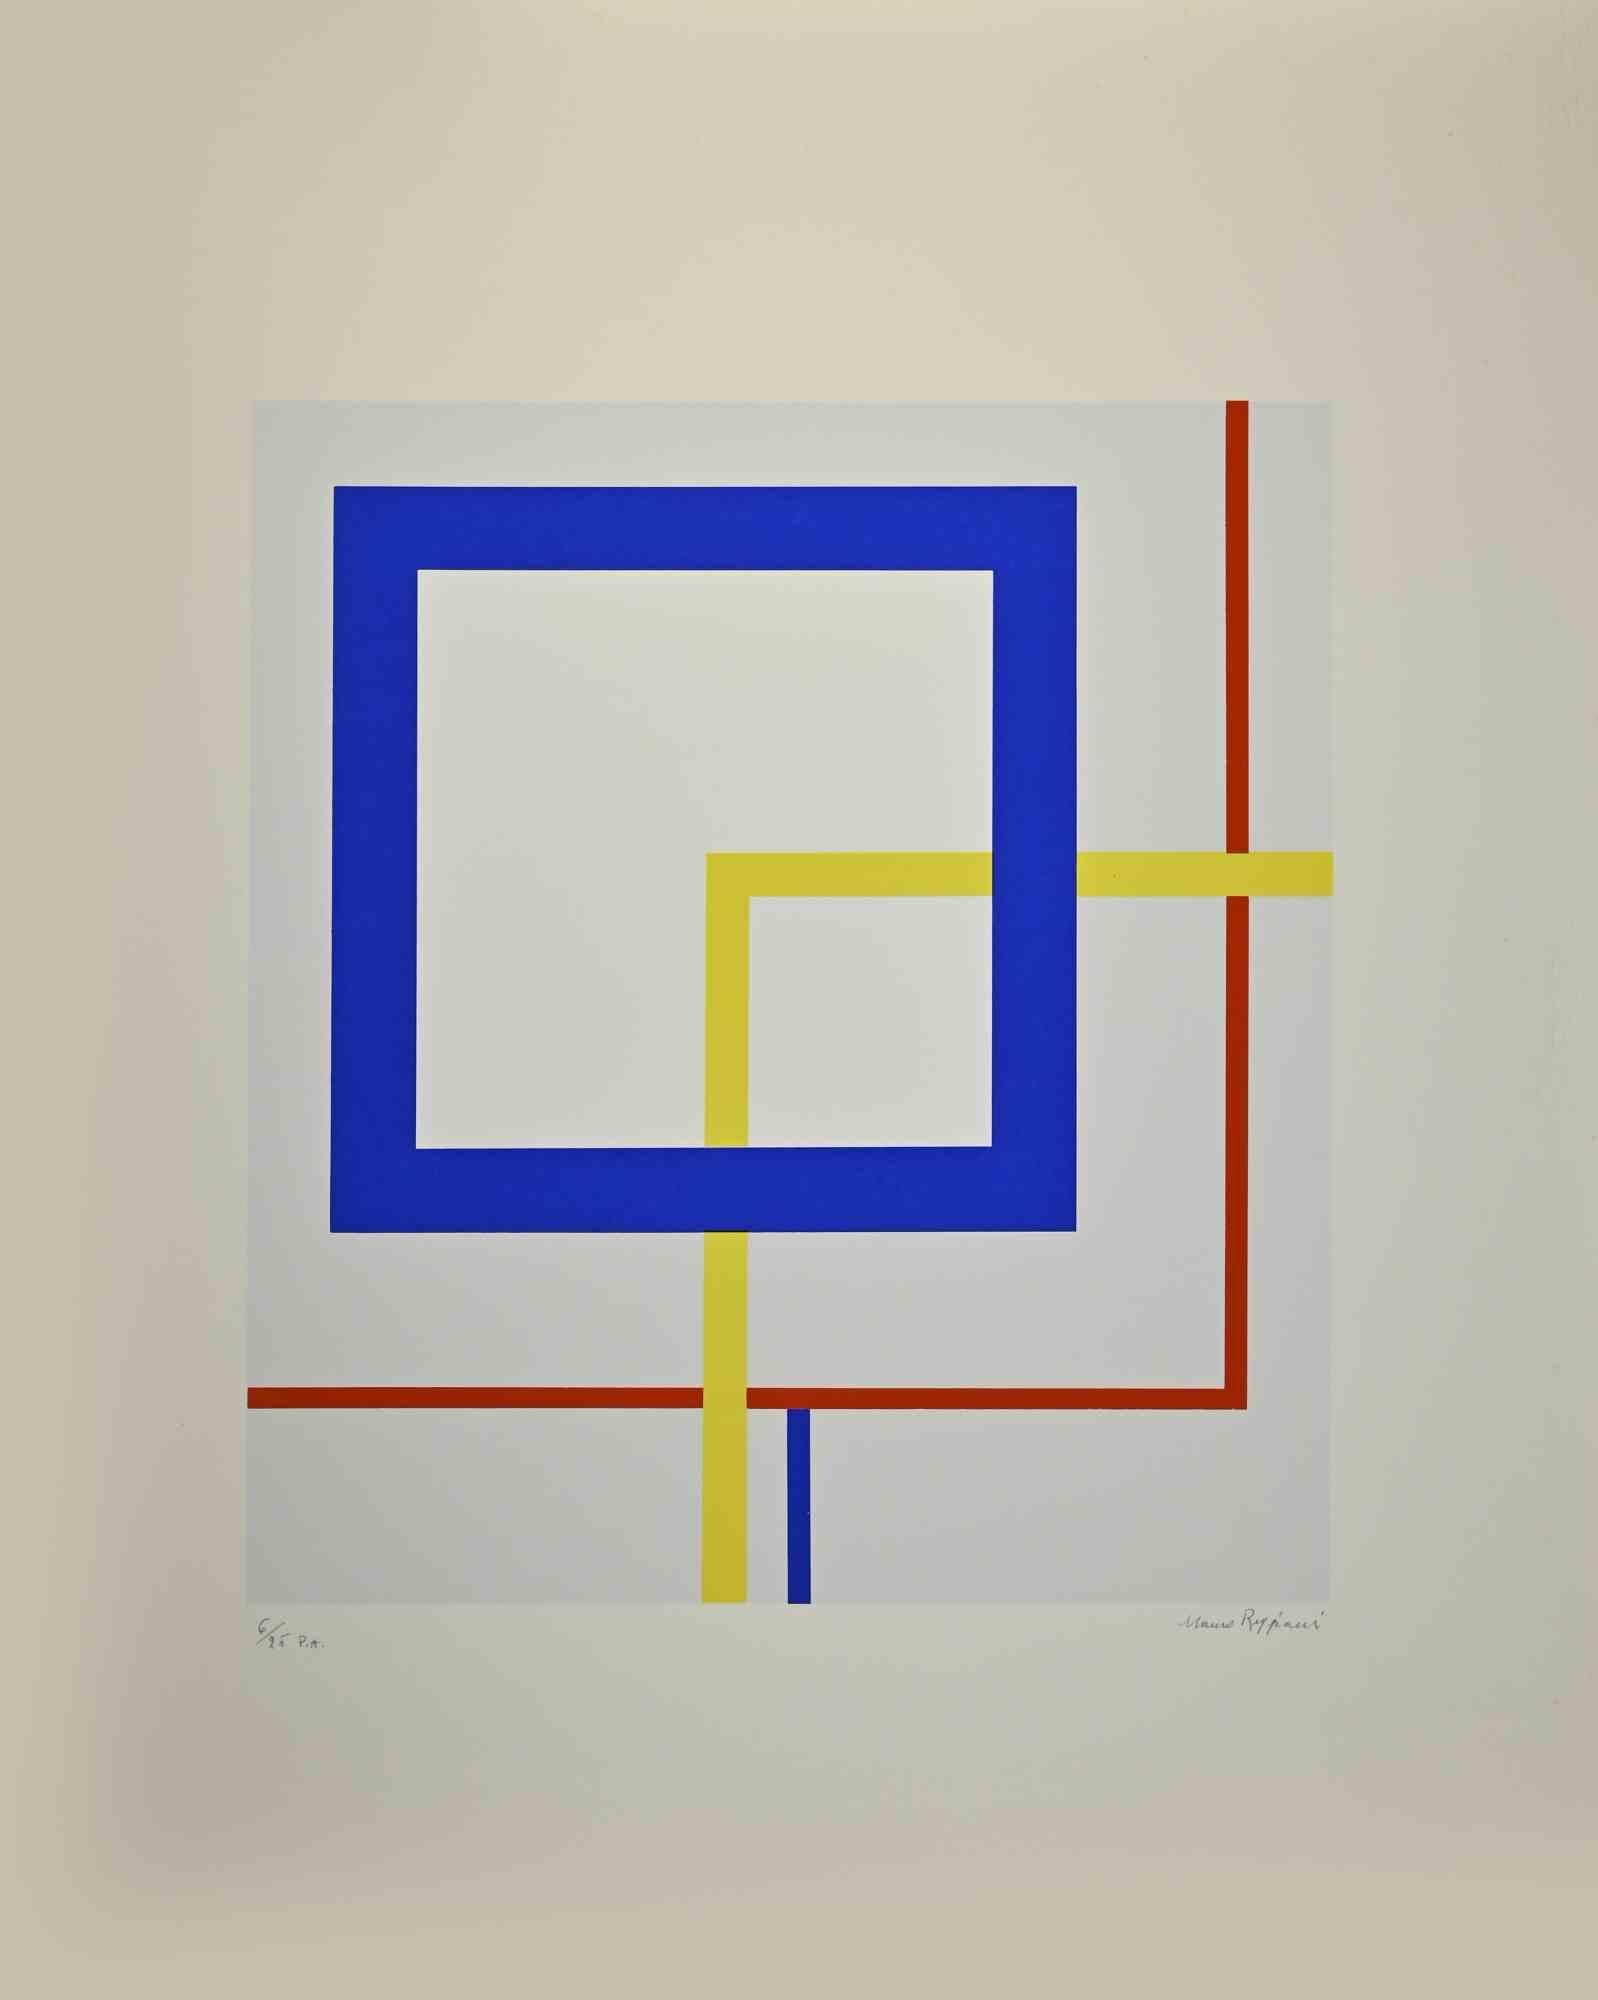 La composition abstraite est une œuvre d'art réalisée en 1974 par Mauro Reggiani. 

73,5 x 59,5 cm.

Edition, 6/25.

Signé à la main dans la marge inférieure droite.

Bonnes conditions